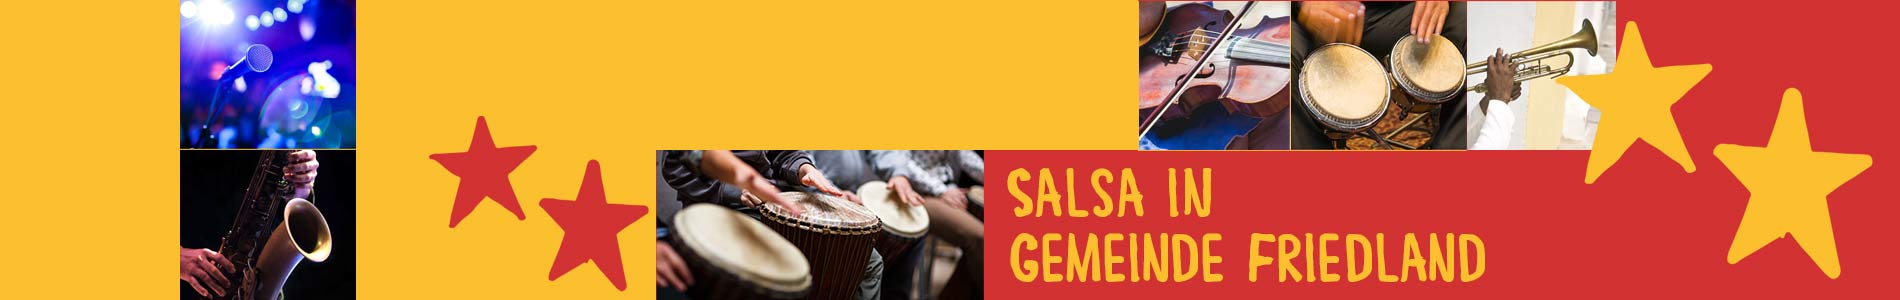 Salsa in Gemeinde Friedland – Salsa lernen und tanzen, Tanzkurse, Partys, Veranstaltungen